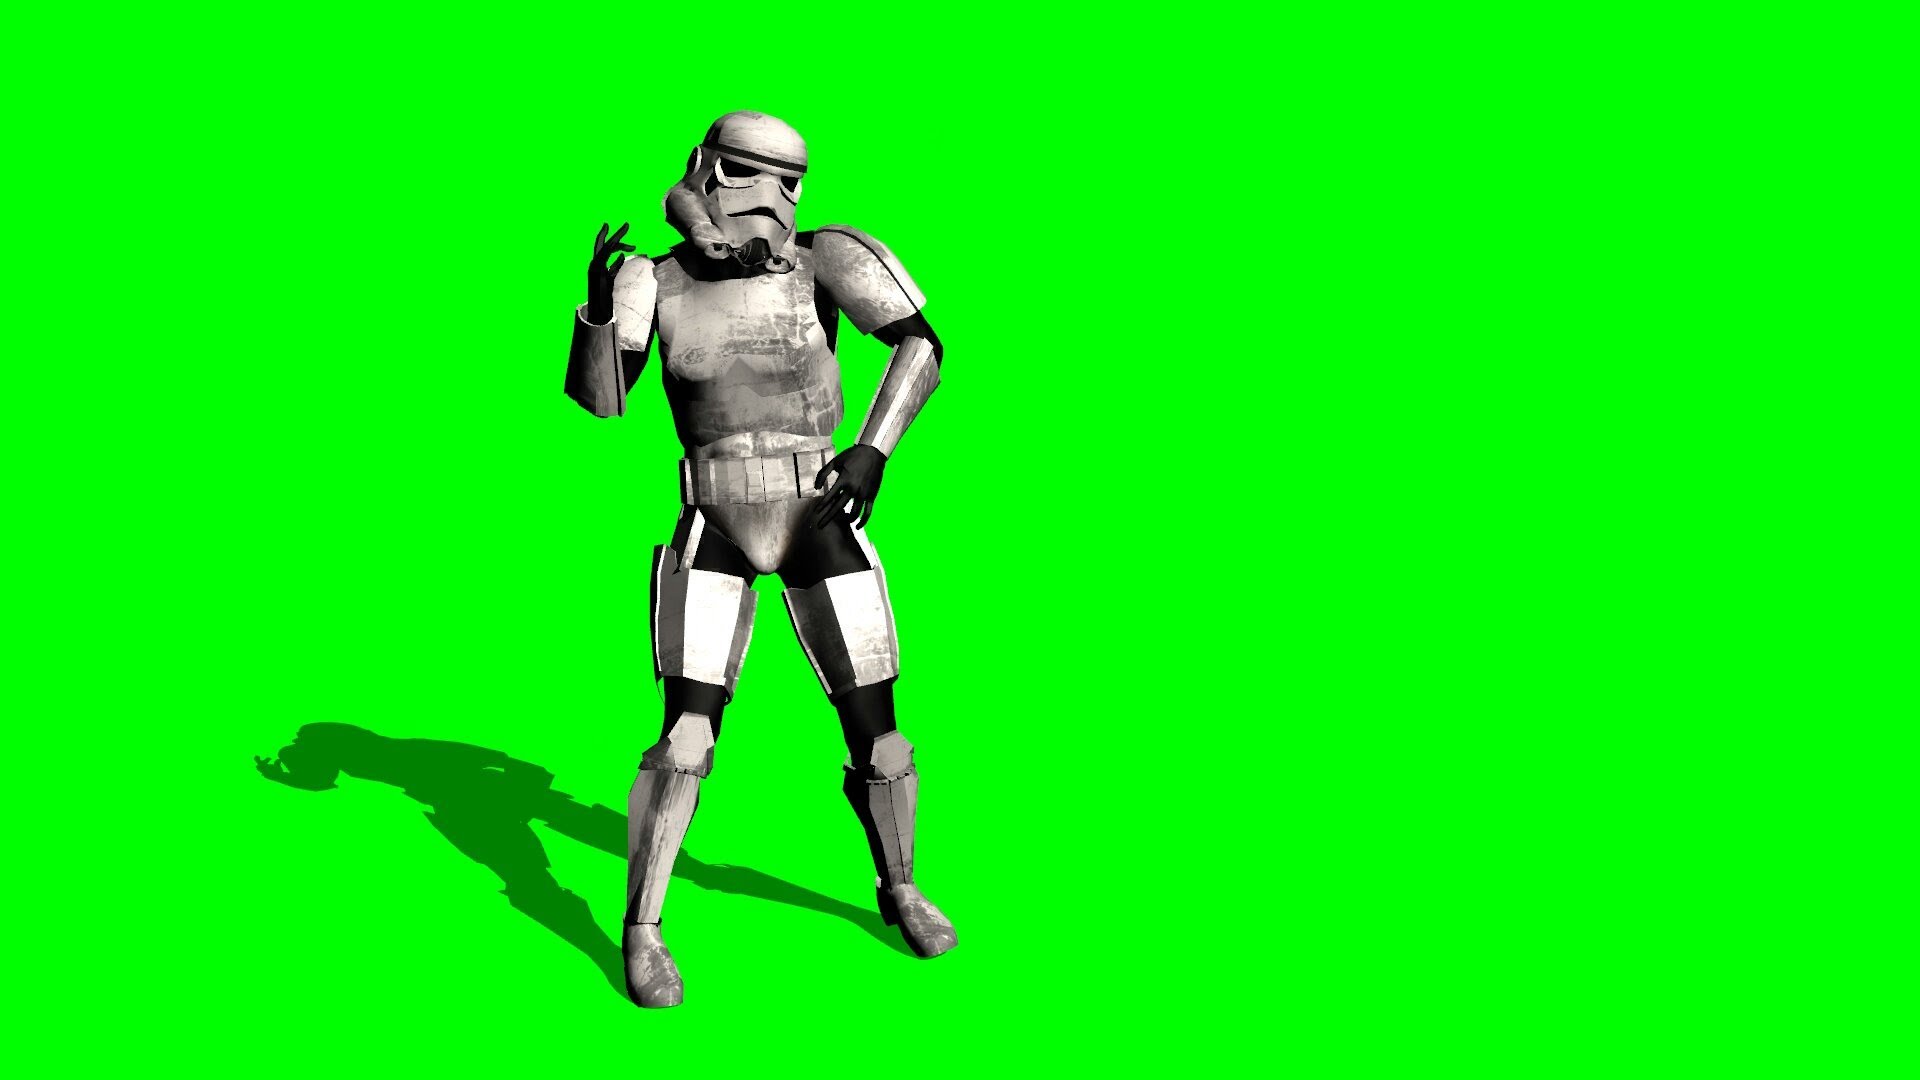 Với màn nhảy múa vô cùng bắt mắt trong trang phục Storm Trooper, bạn sẽ không thể rời mắt khỏi màn hình khi xem video này. Hãy tải miễn phí và sử dụng hình ảnh này để làm hình nền hoặc chia sẻ trên các trang mạng xã hội để cuốn hút sự chú ý của bạn bè.